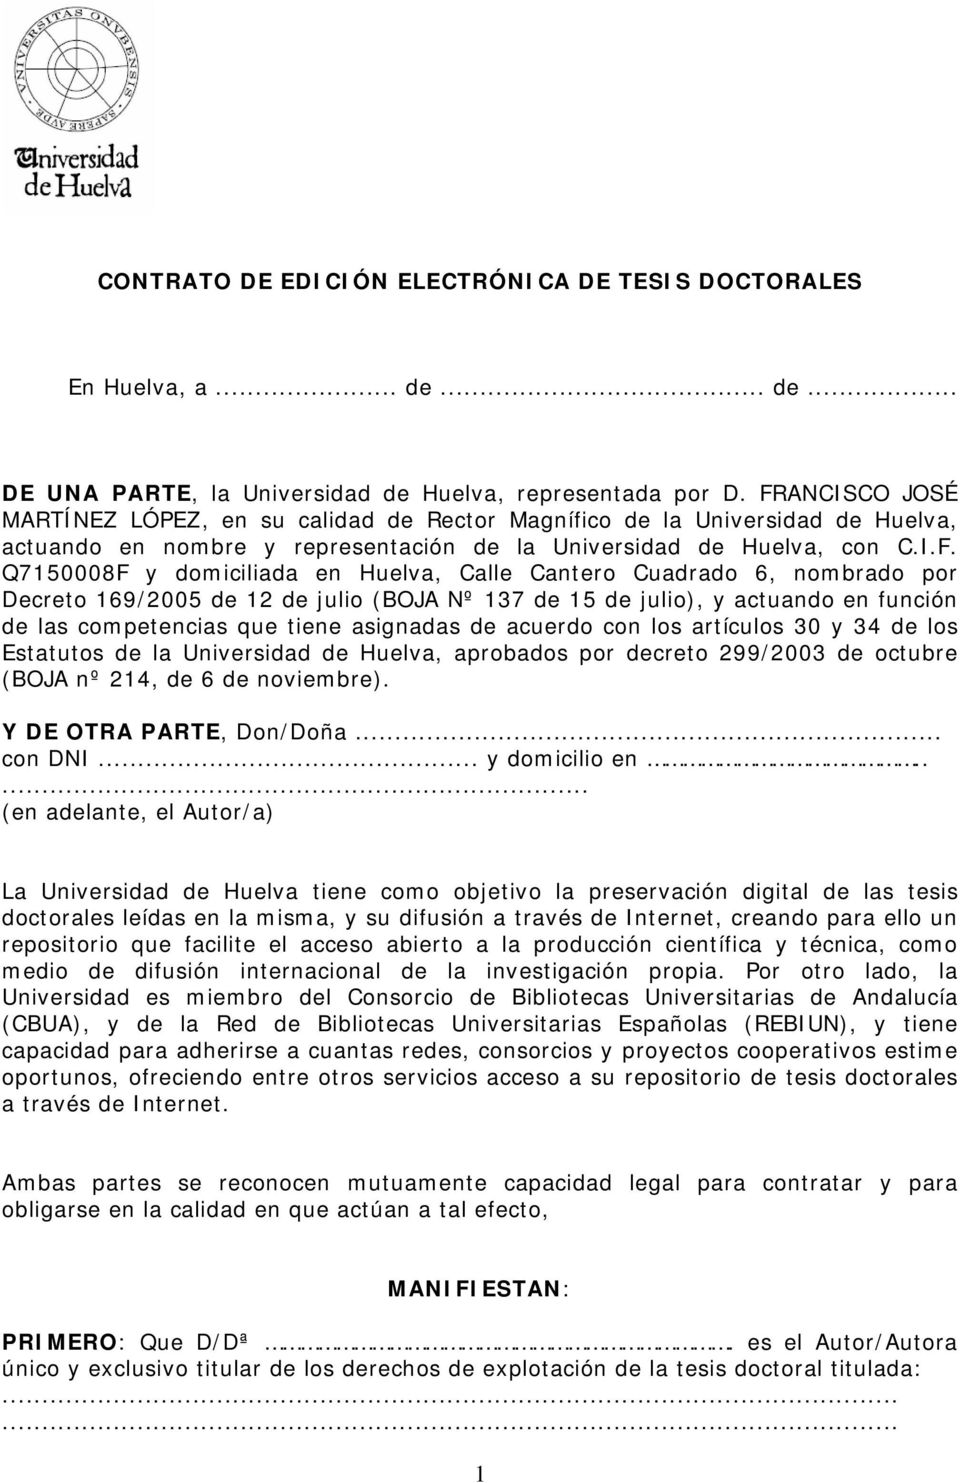 Huelva, Calle Cantero Cuadrado 6, nombrado por Decreto 169/2005 de 12 de julio (BOJA Nº 137 de 15 de julio), y actuando en función de las competencias que tiene asignadas de acuerdo con los artículos